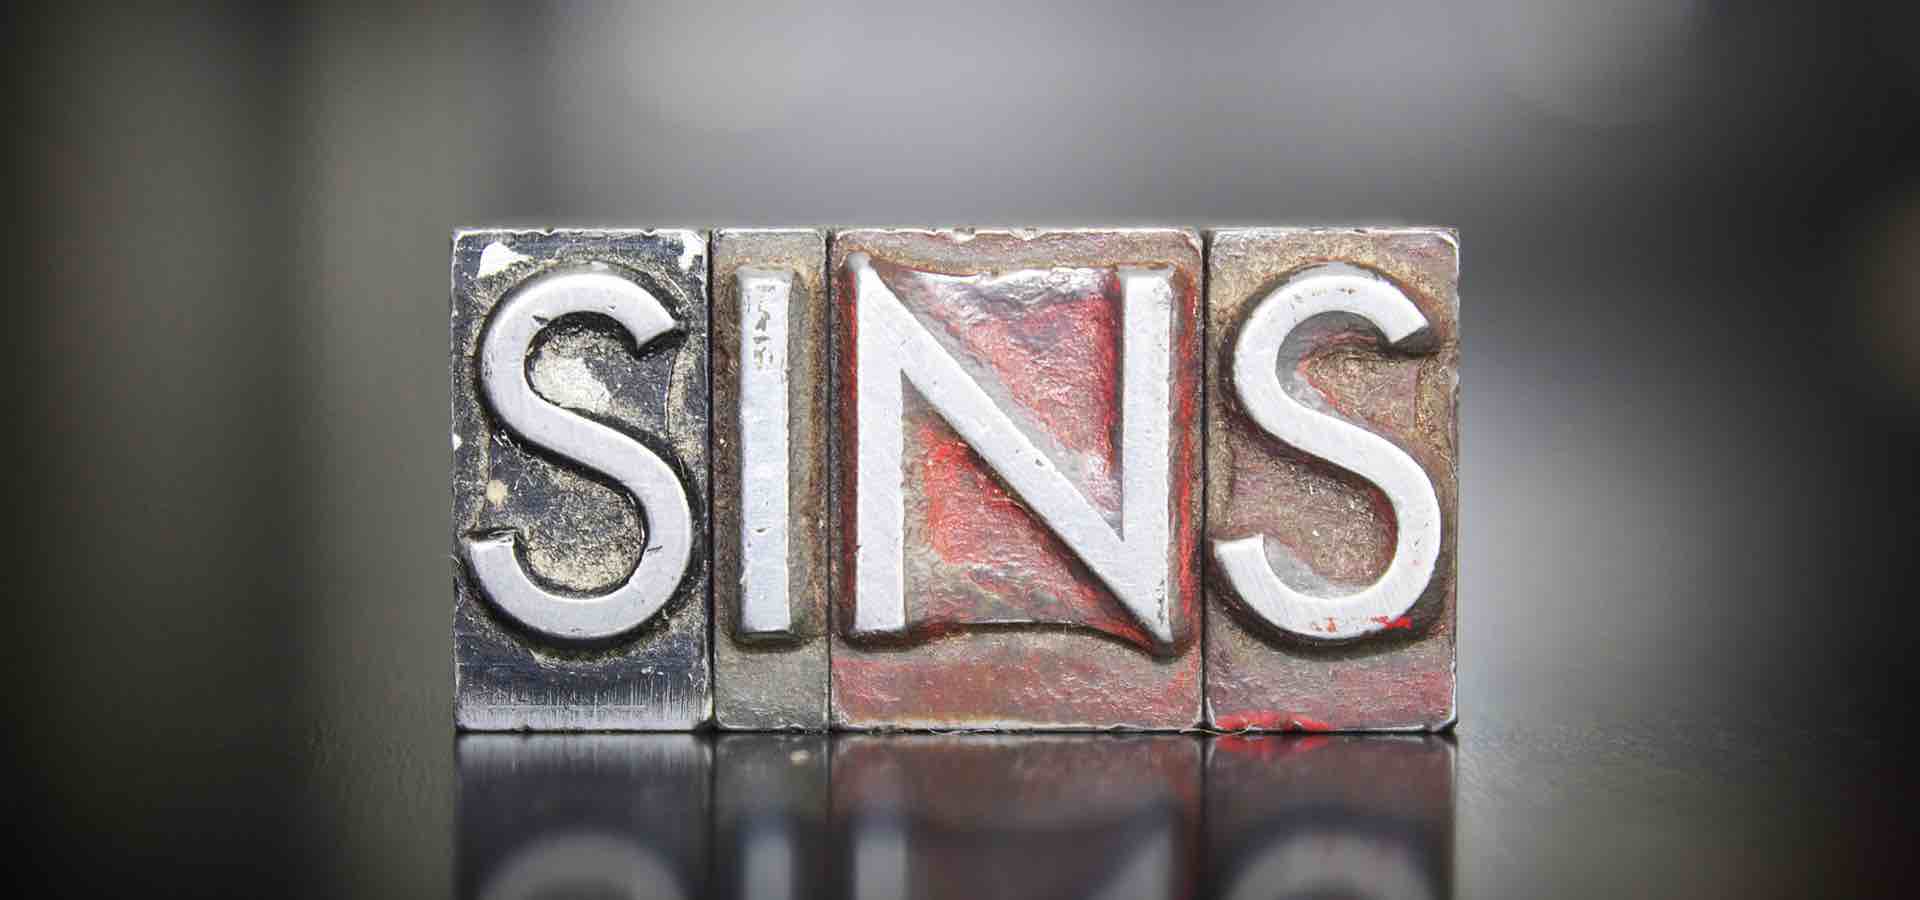 Sins